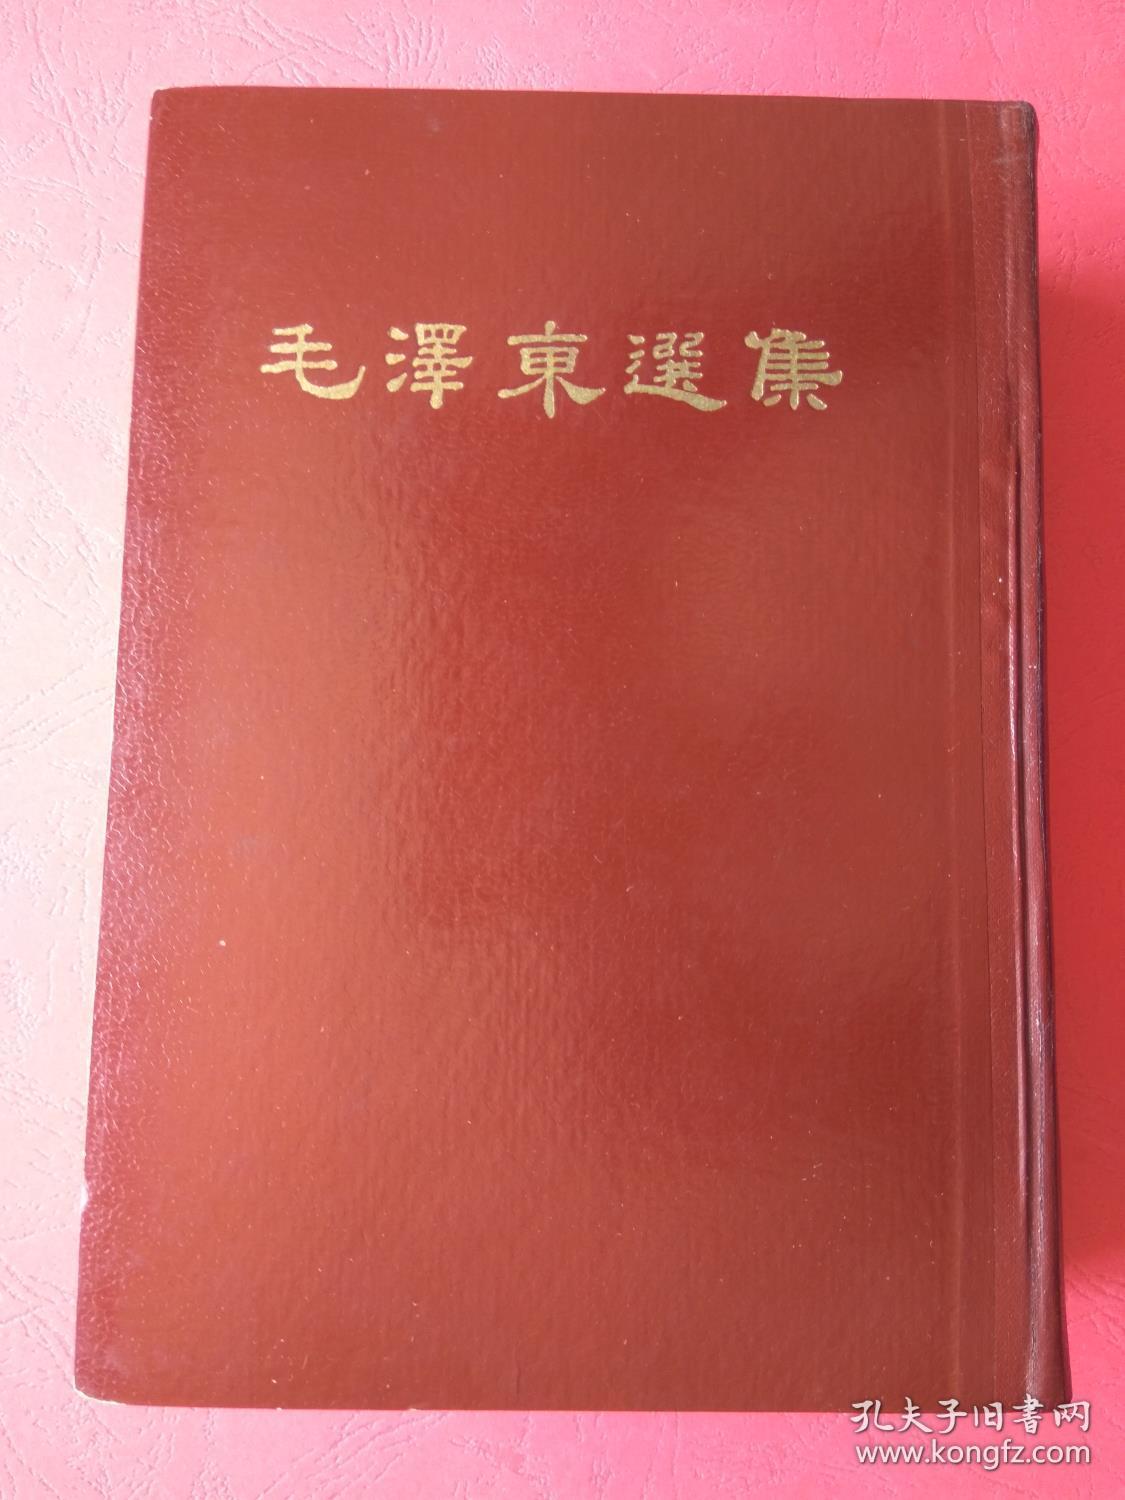 毛泽东选集(一卷本)繁体竖排本 1966年沈阳第